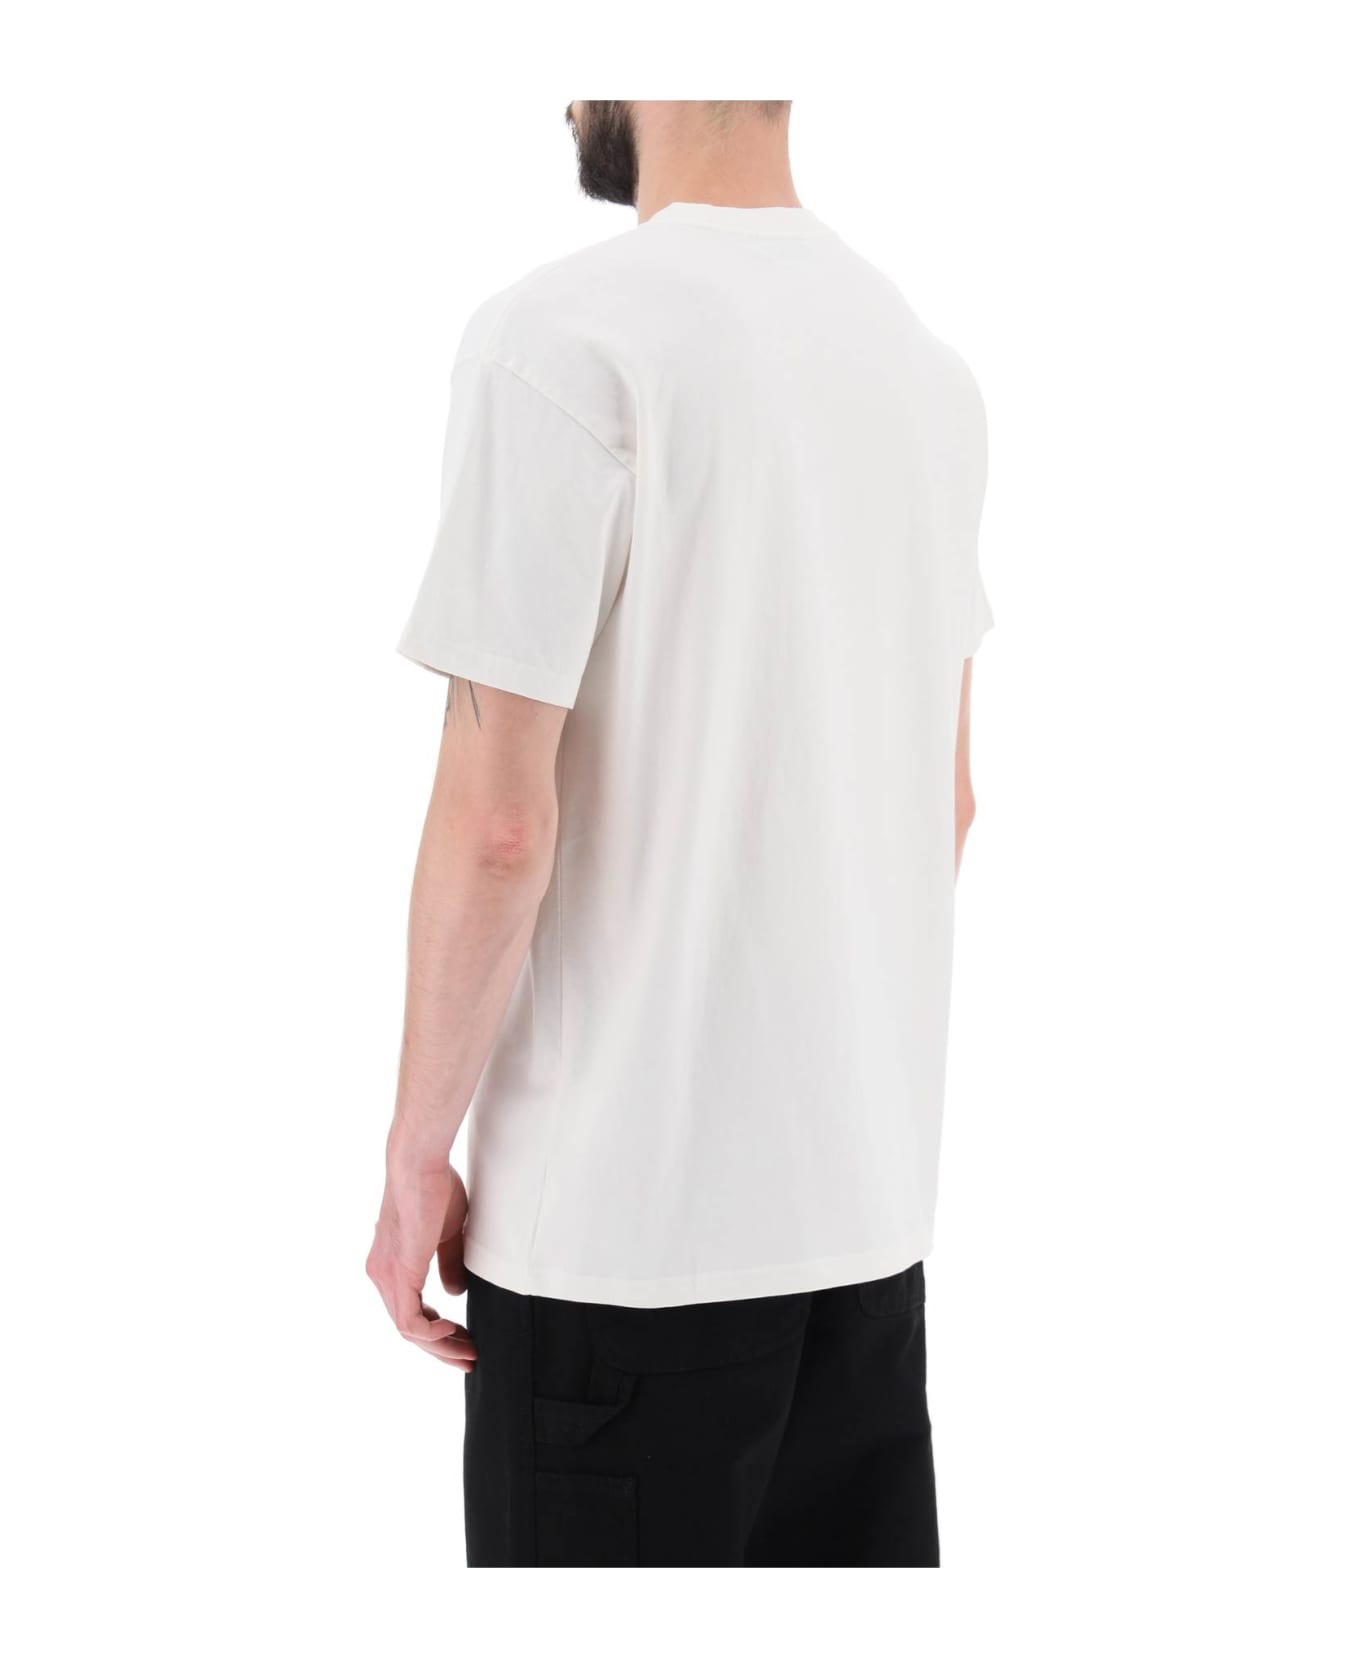 Carhartt Duster T-shirt - WHITE (White)